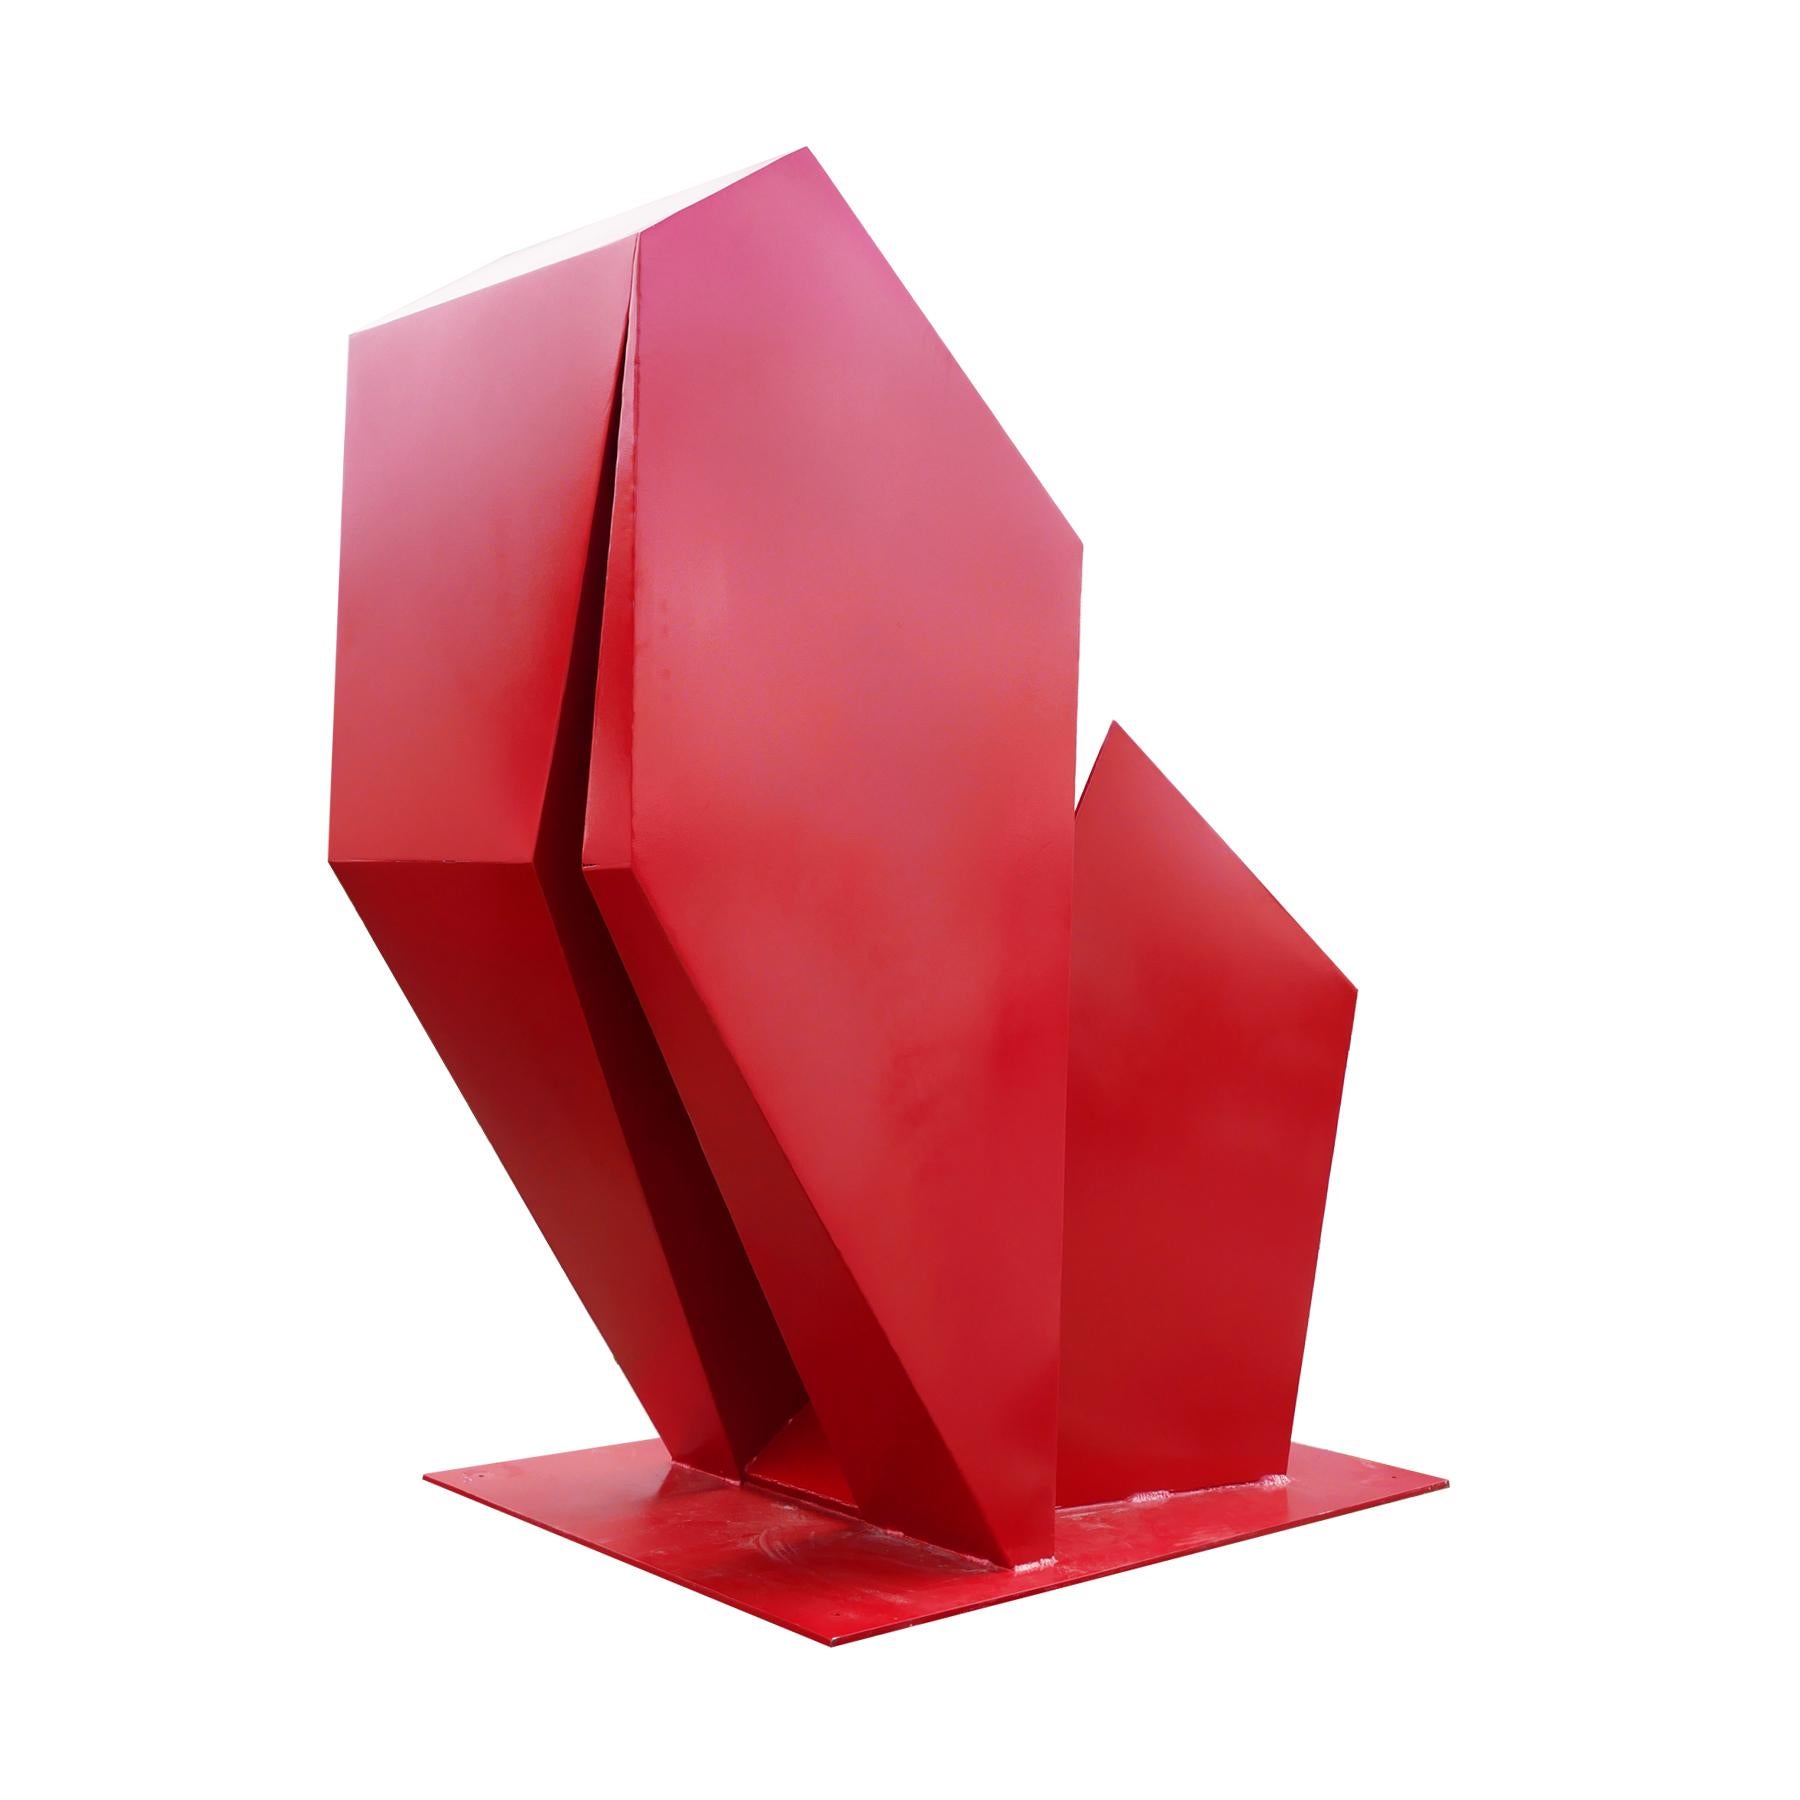 Grande sculpture d'extérieur géométrique rouge contemporaine  - Rouge Abstract Sculpture par Reeves Art and Design